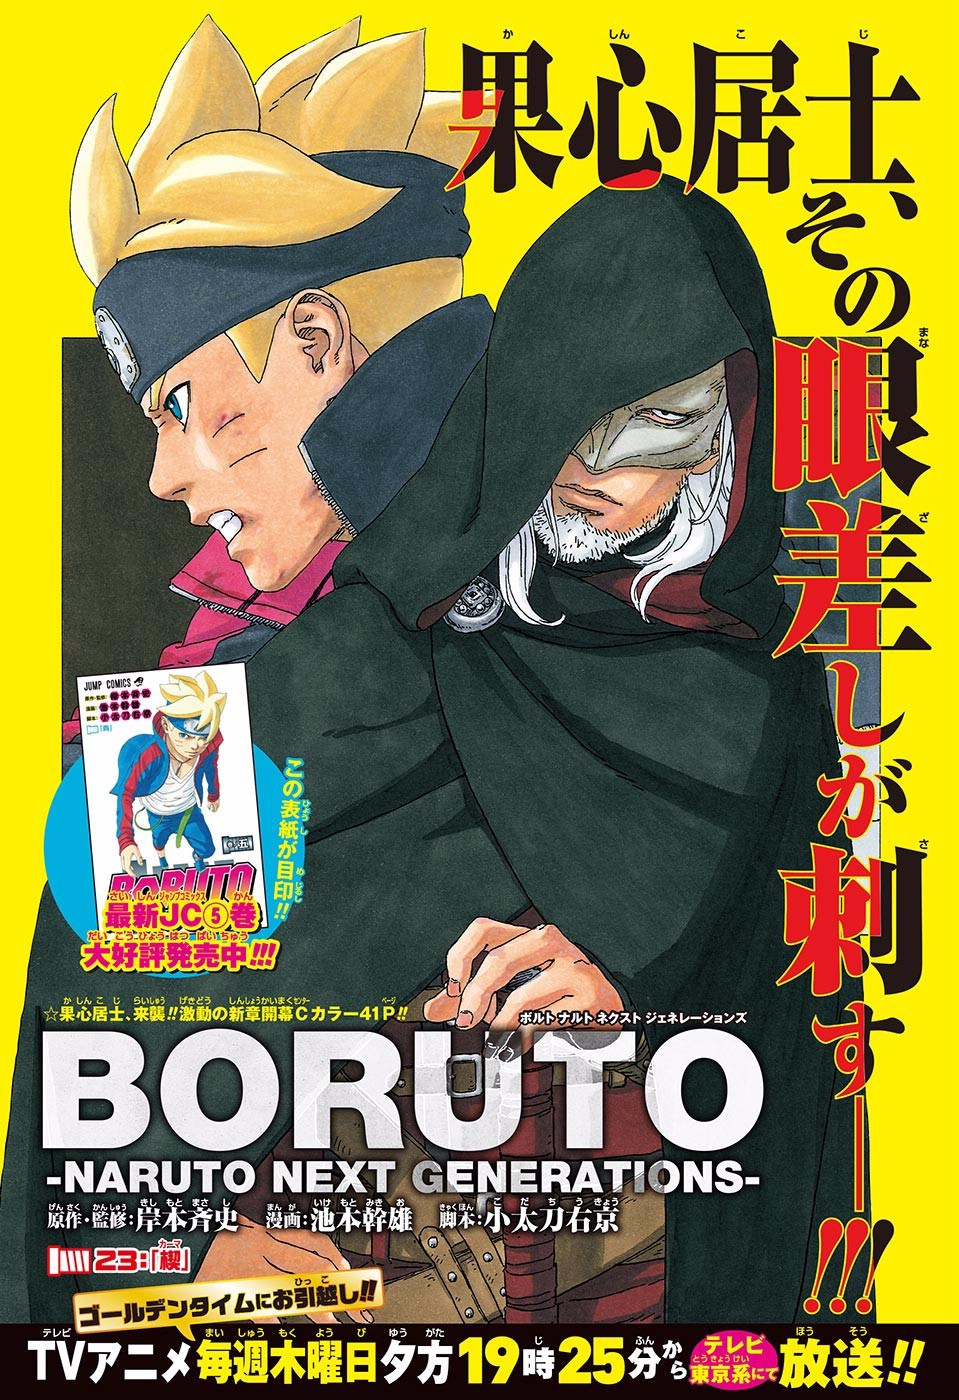 Boruto Chapter 54 Leaked Manga Revealed  Sasuke Attacks Boruto